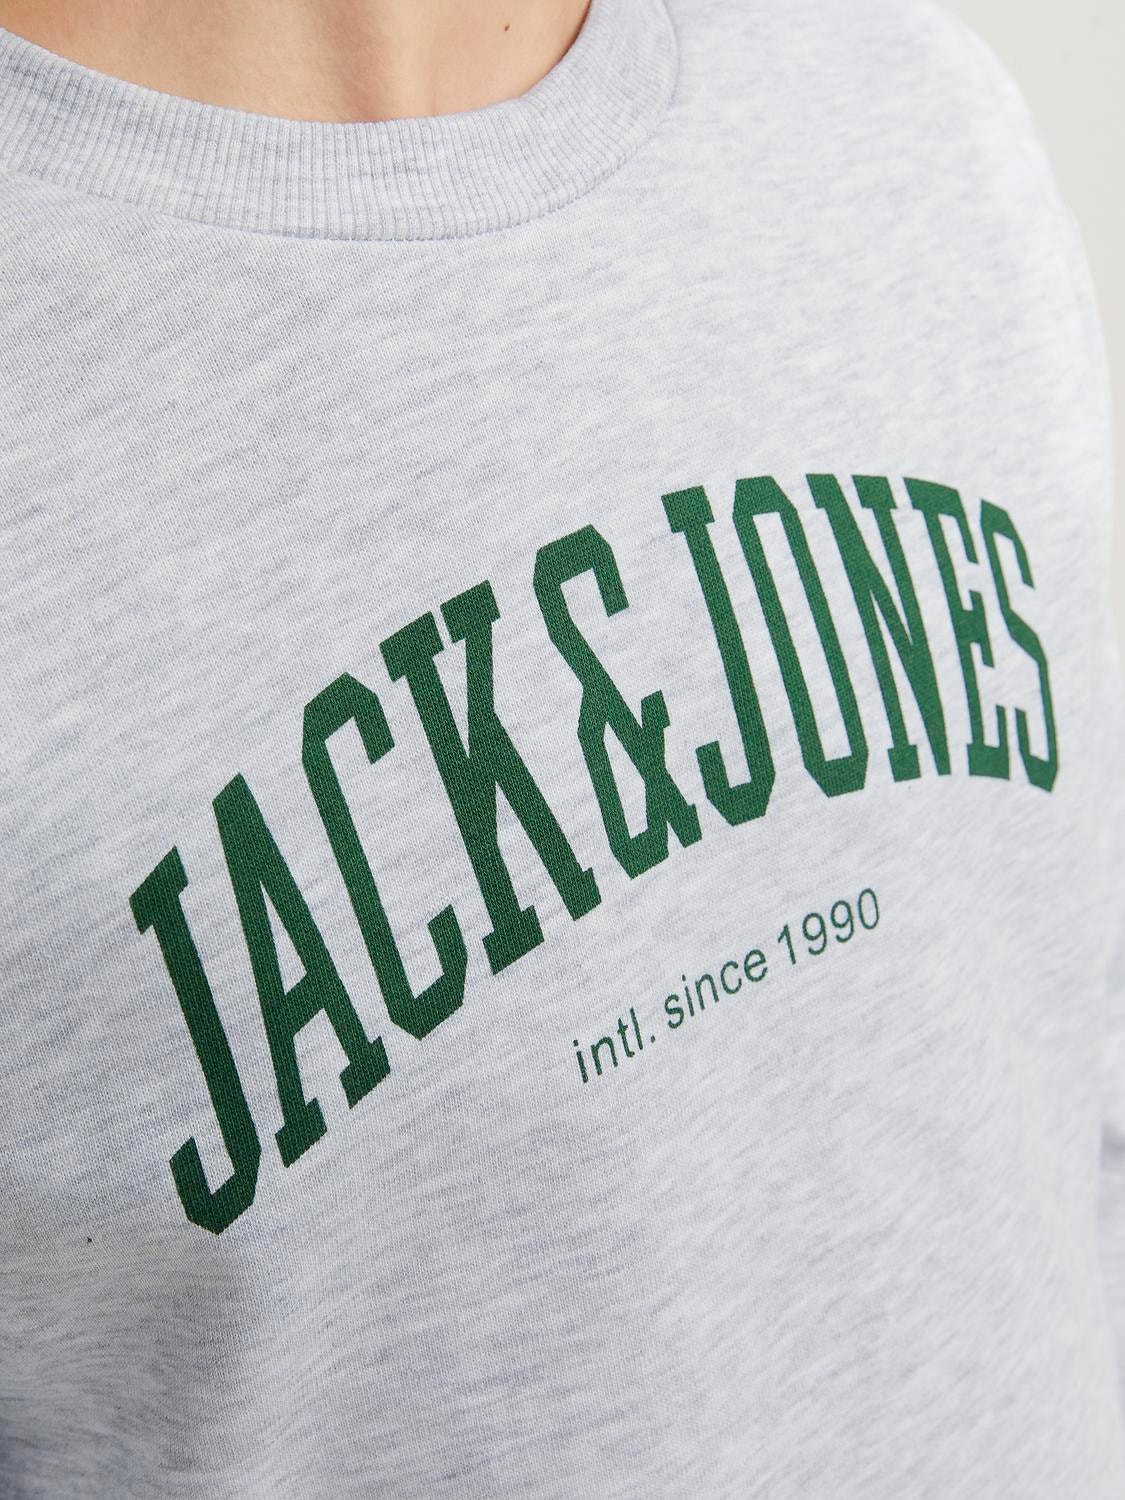 Jack & Jones Trükitud Meeskonnakaelusega higistamissärk Junior -White Melange - 12249347